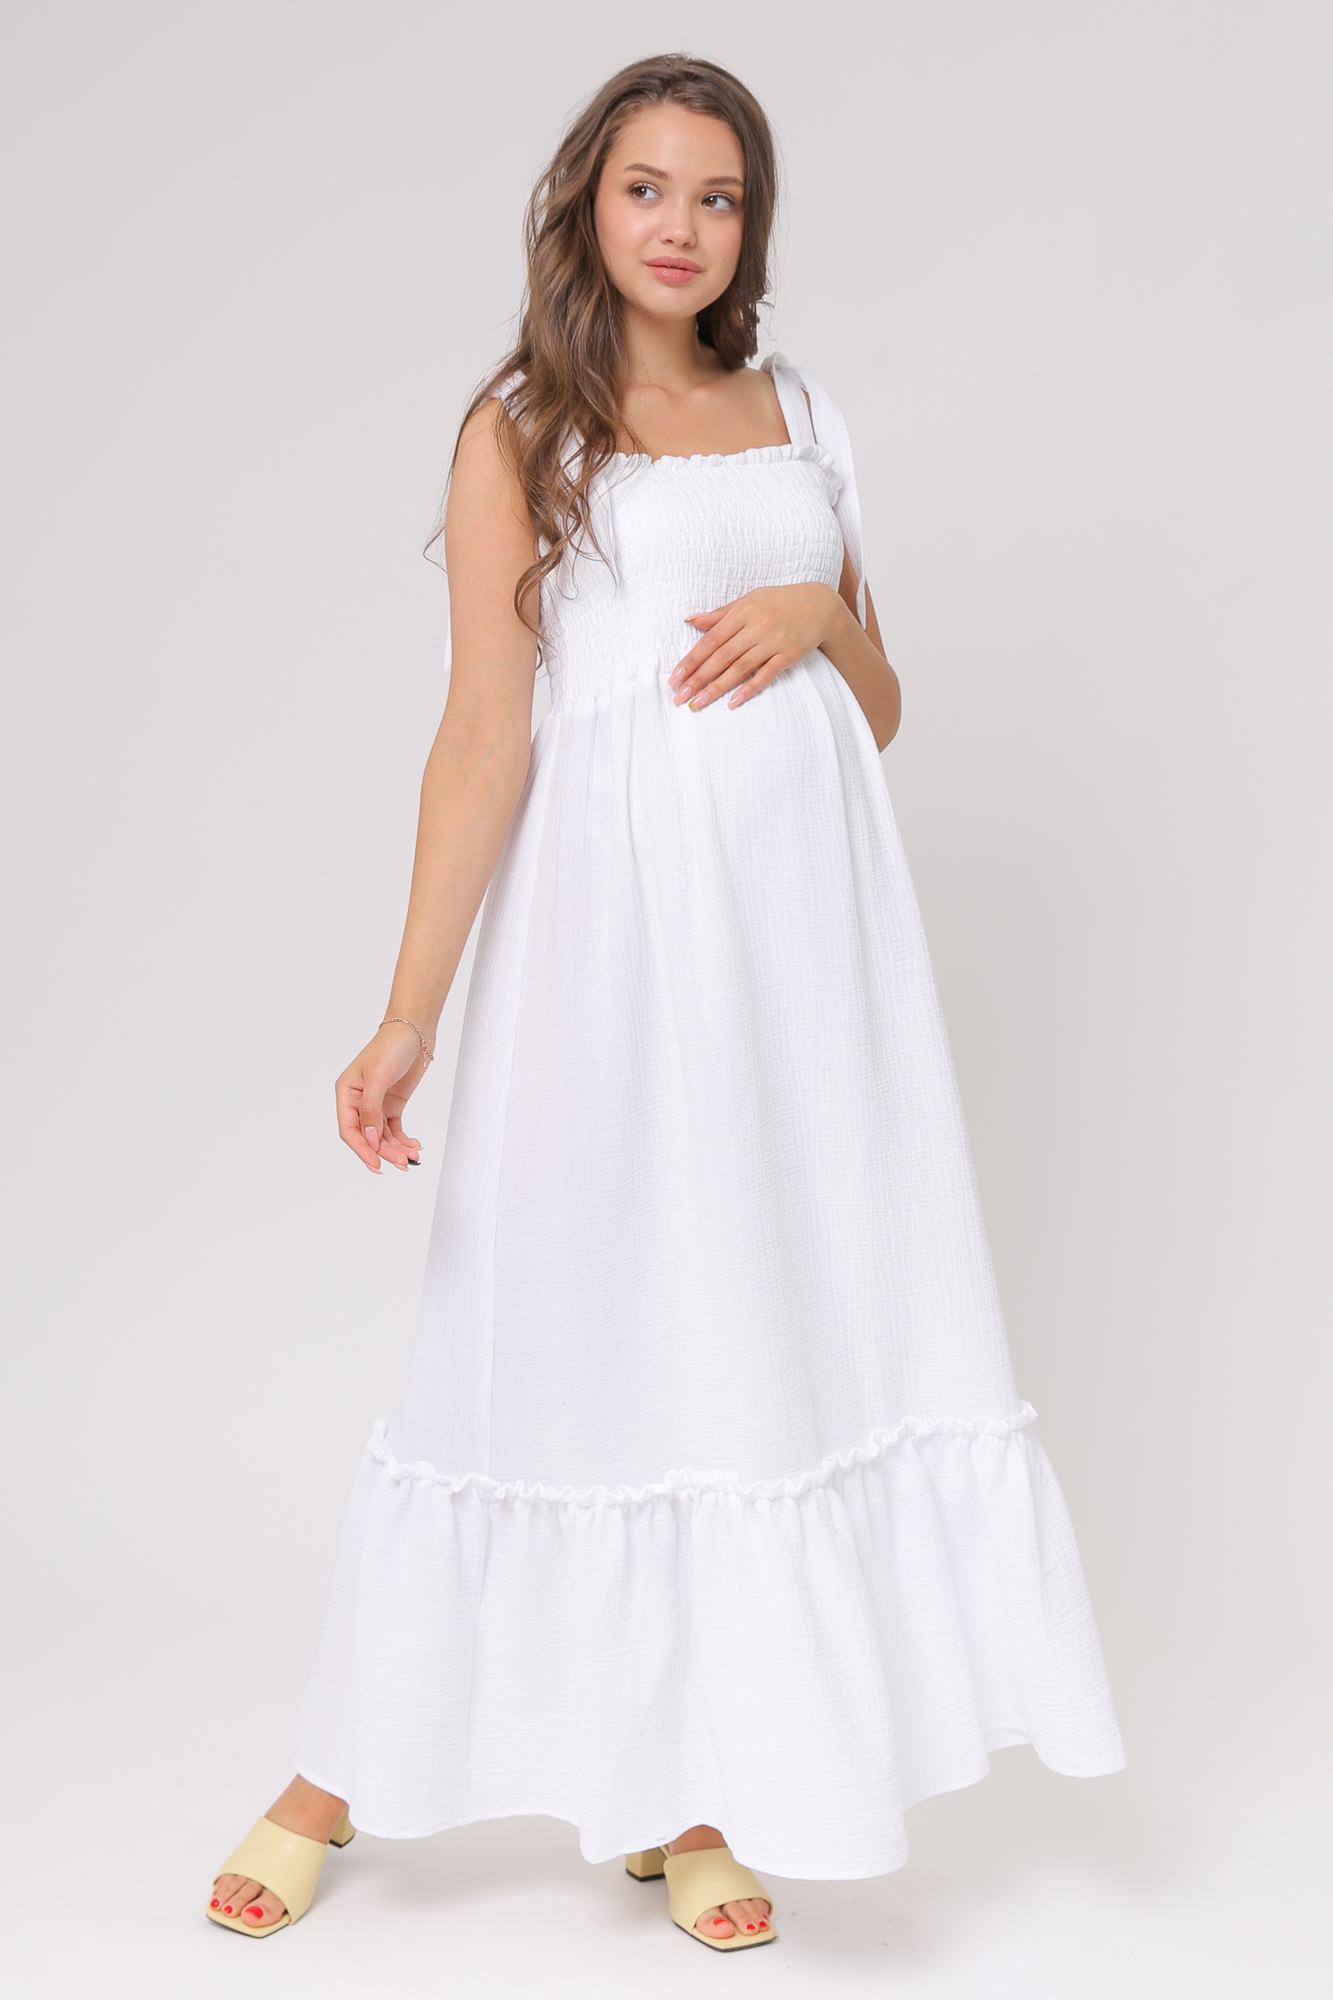 Купить платья и сарафаны для беременных в интернет магазине sauna-chelyabinsk.ru